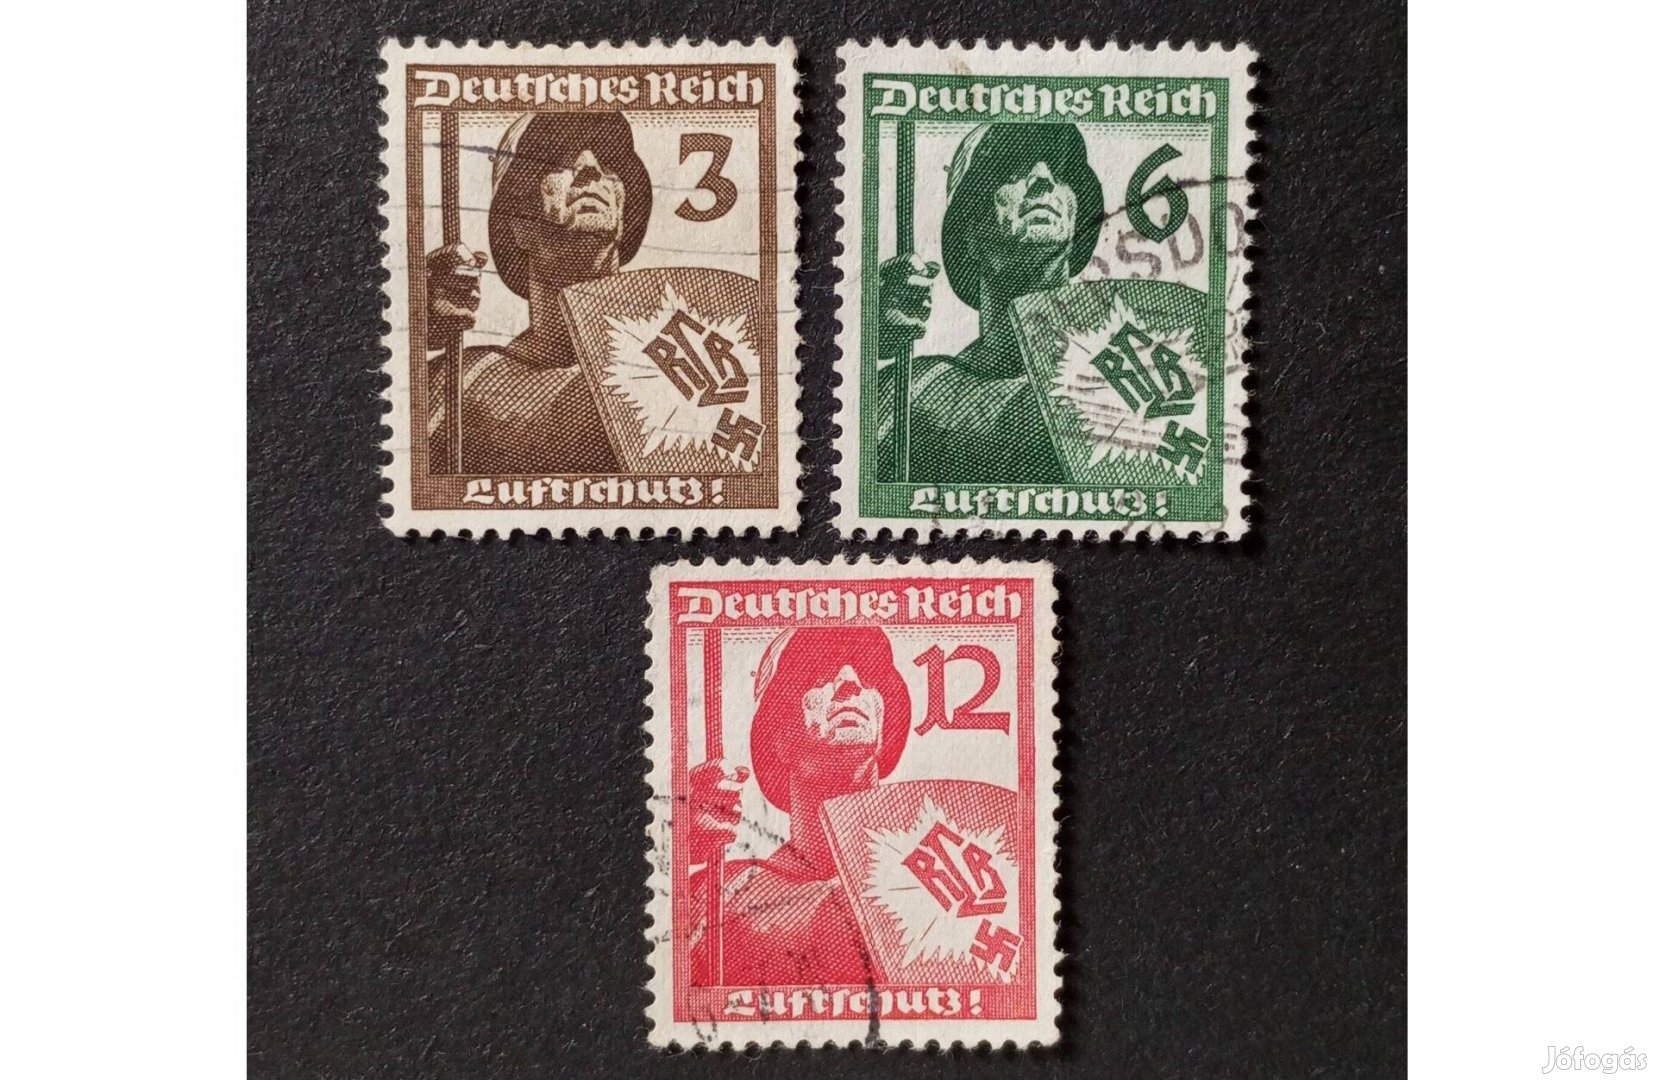 Deutsches Reich 1937-es légvédelem komplett bélyegsor